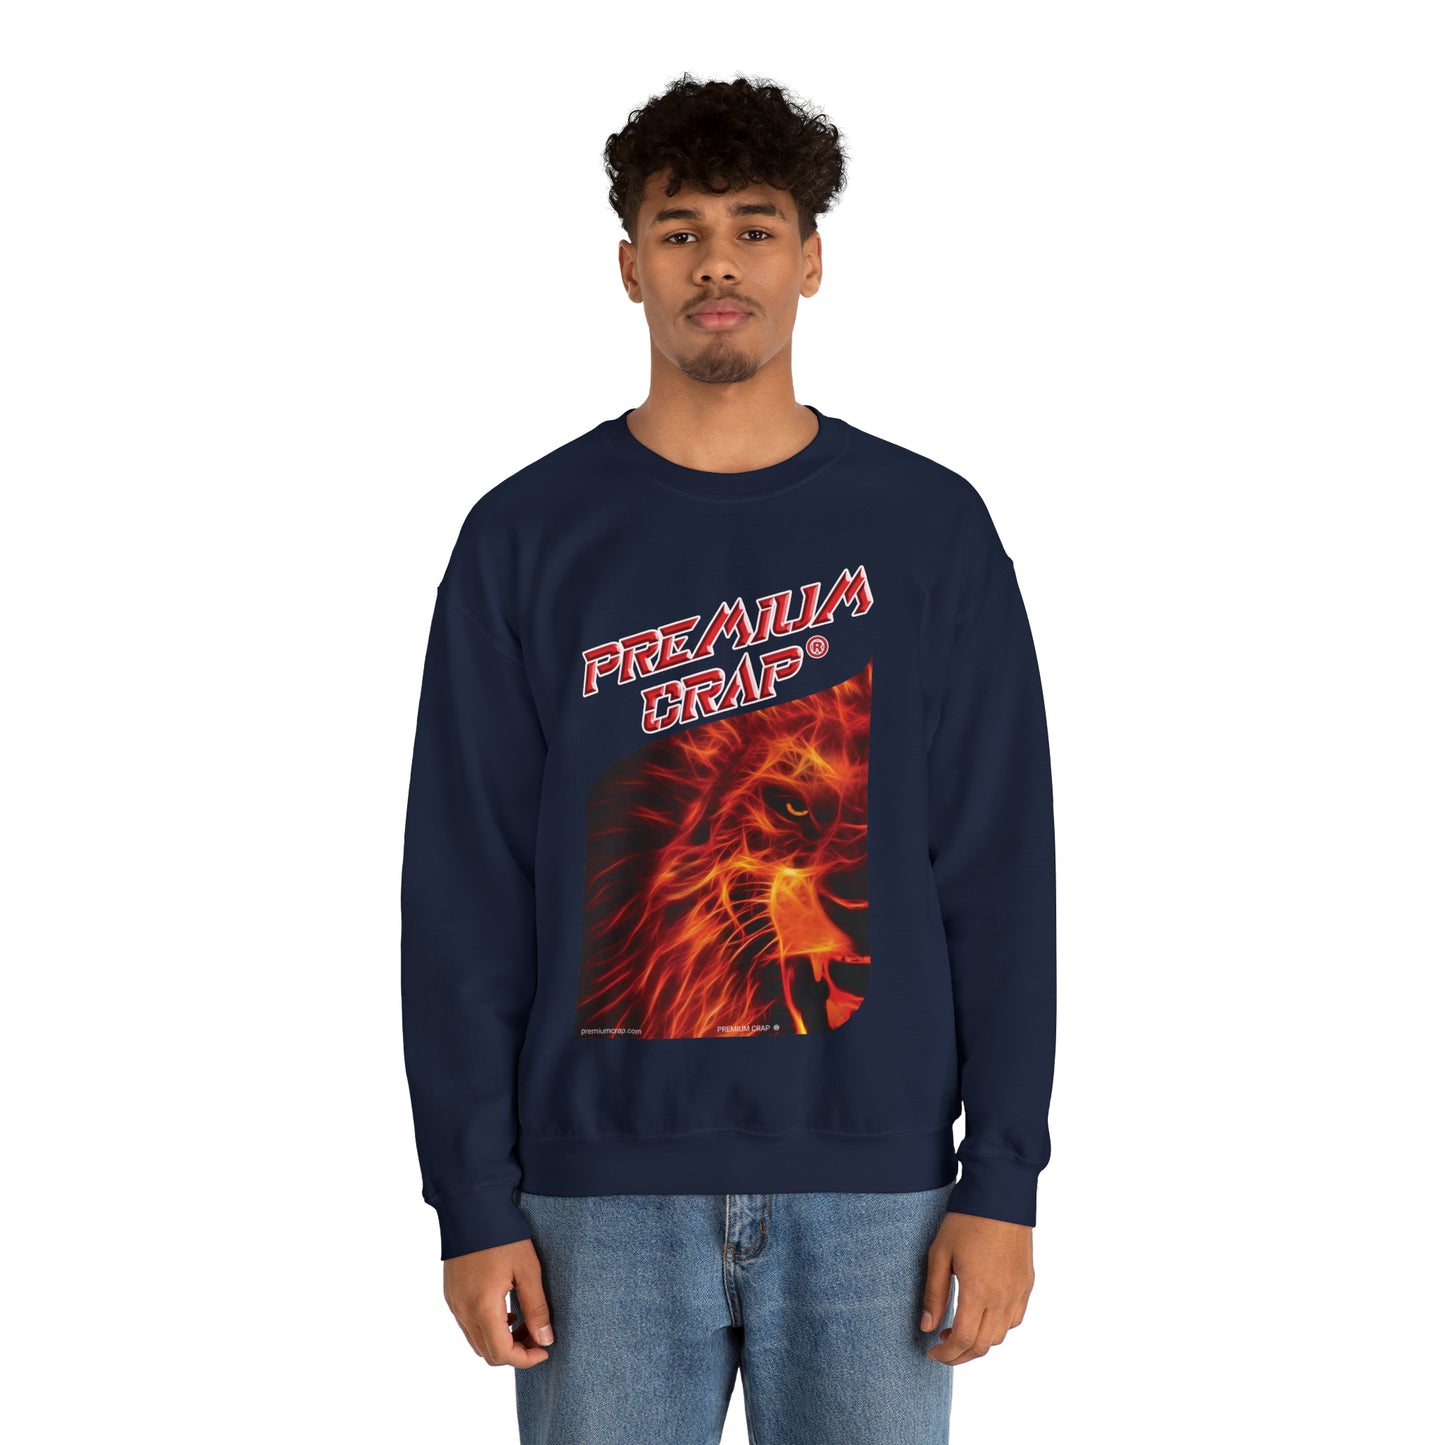 Premium Crap Waggish Sweatshirt